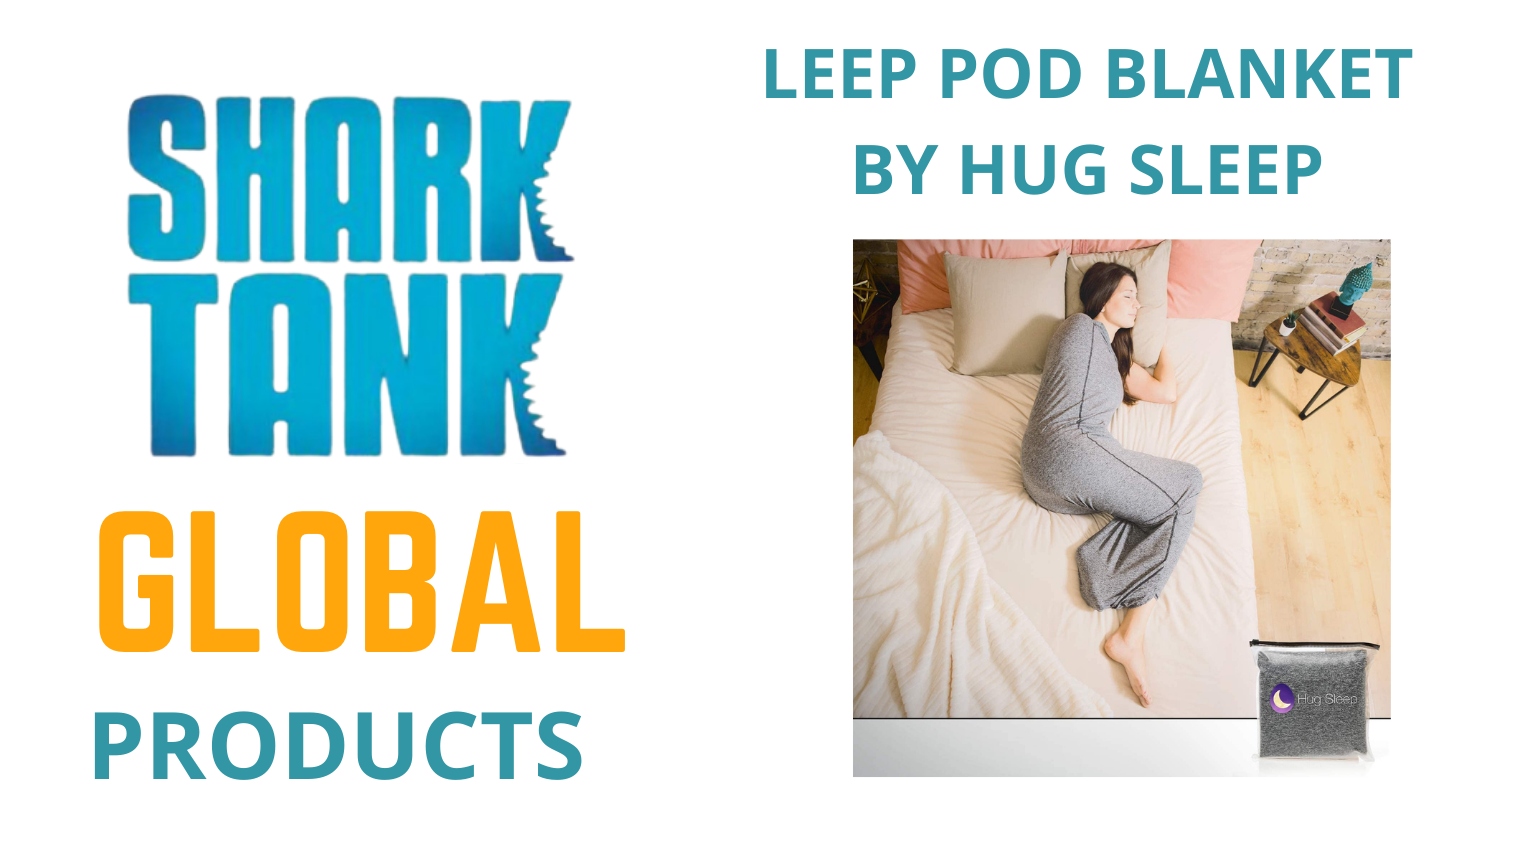 LEEP POD BLANKET BY HUG SLEEP